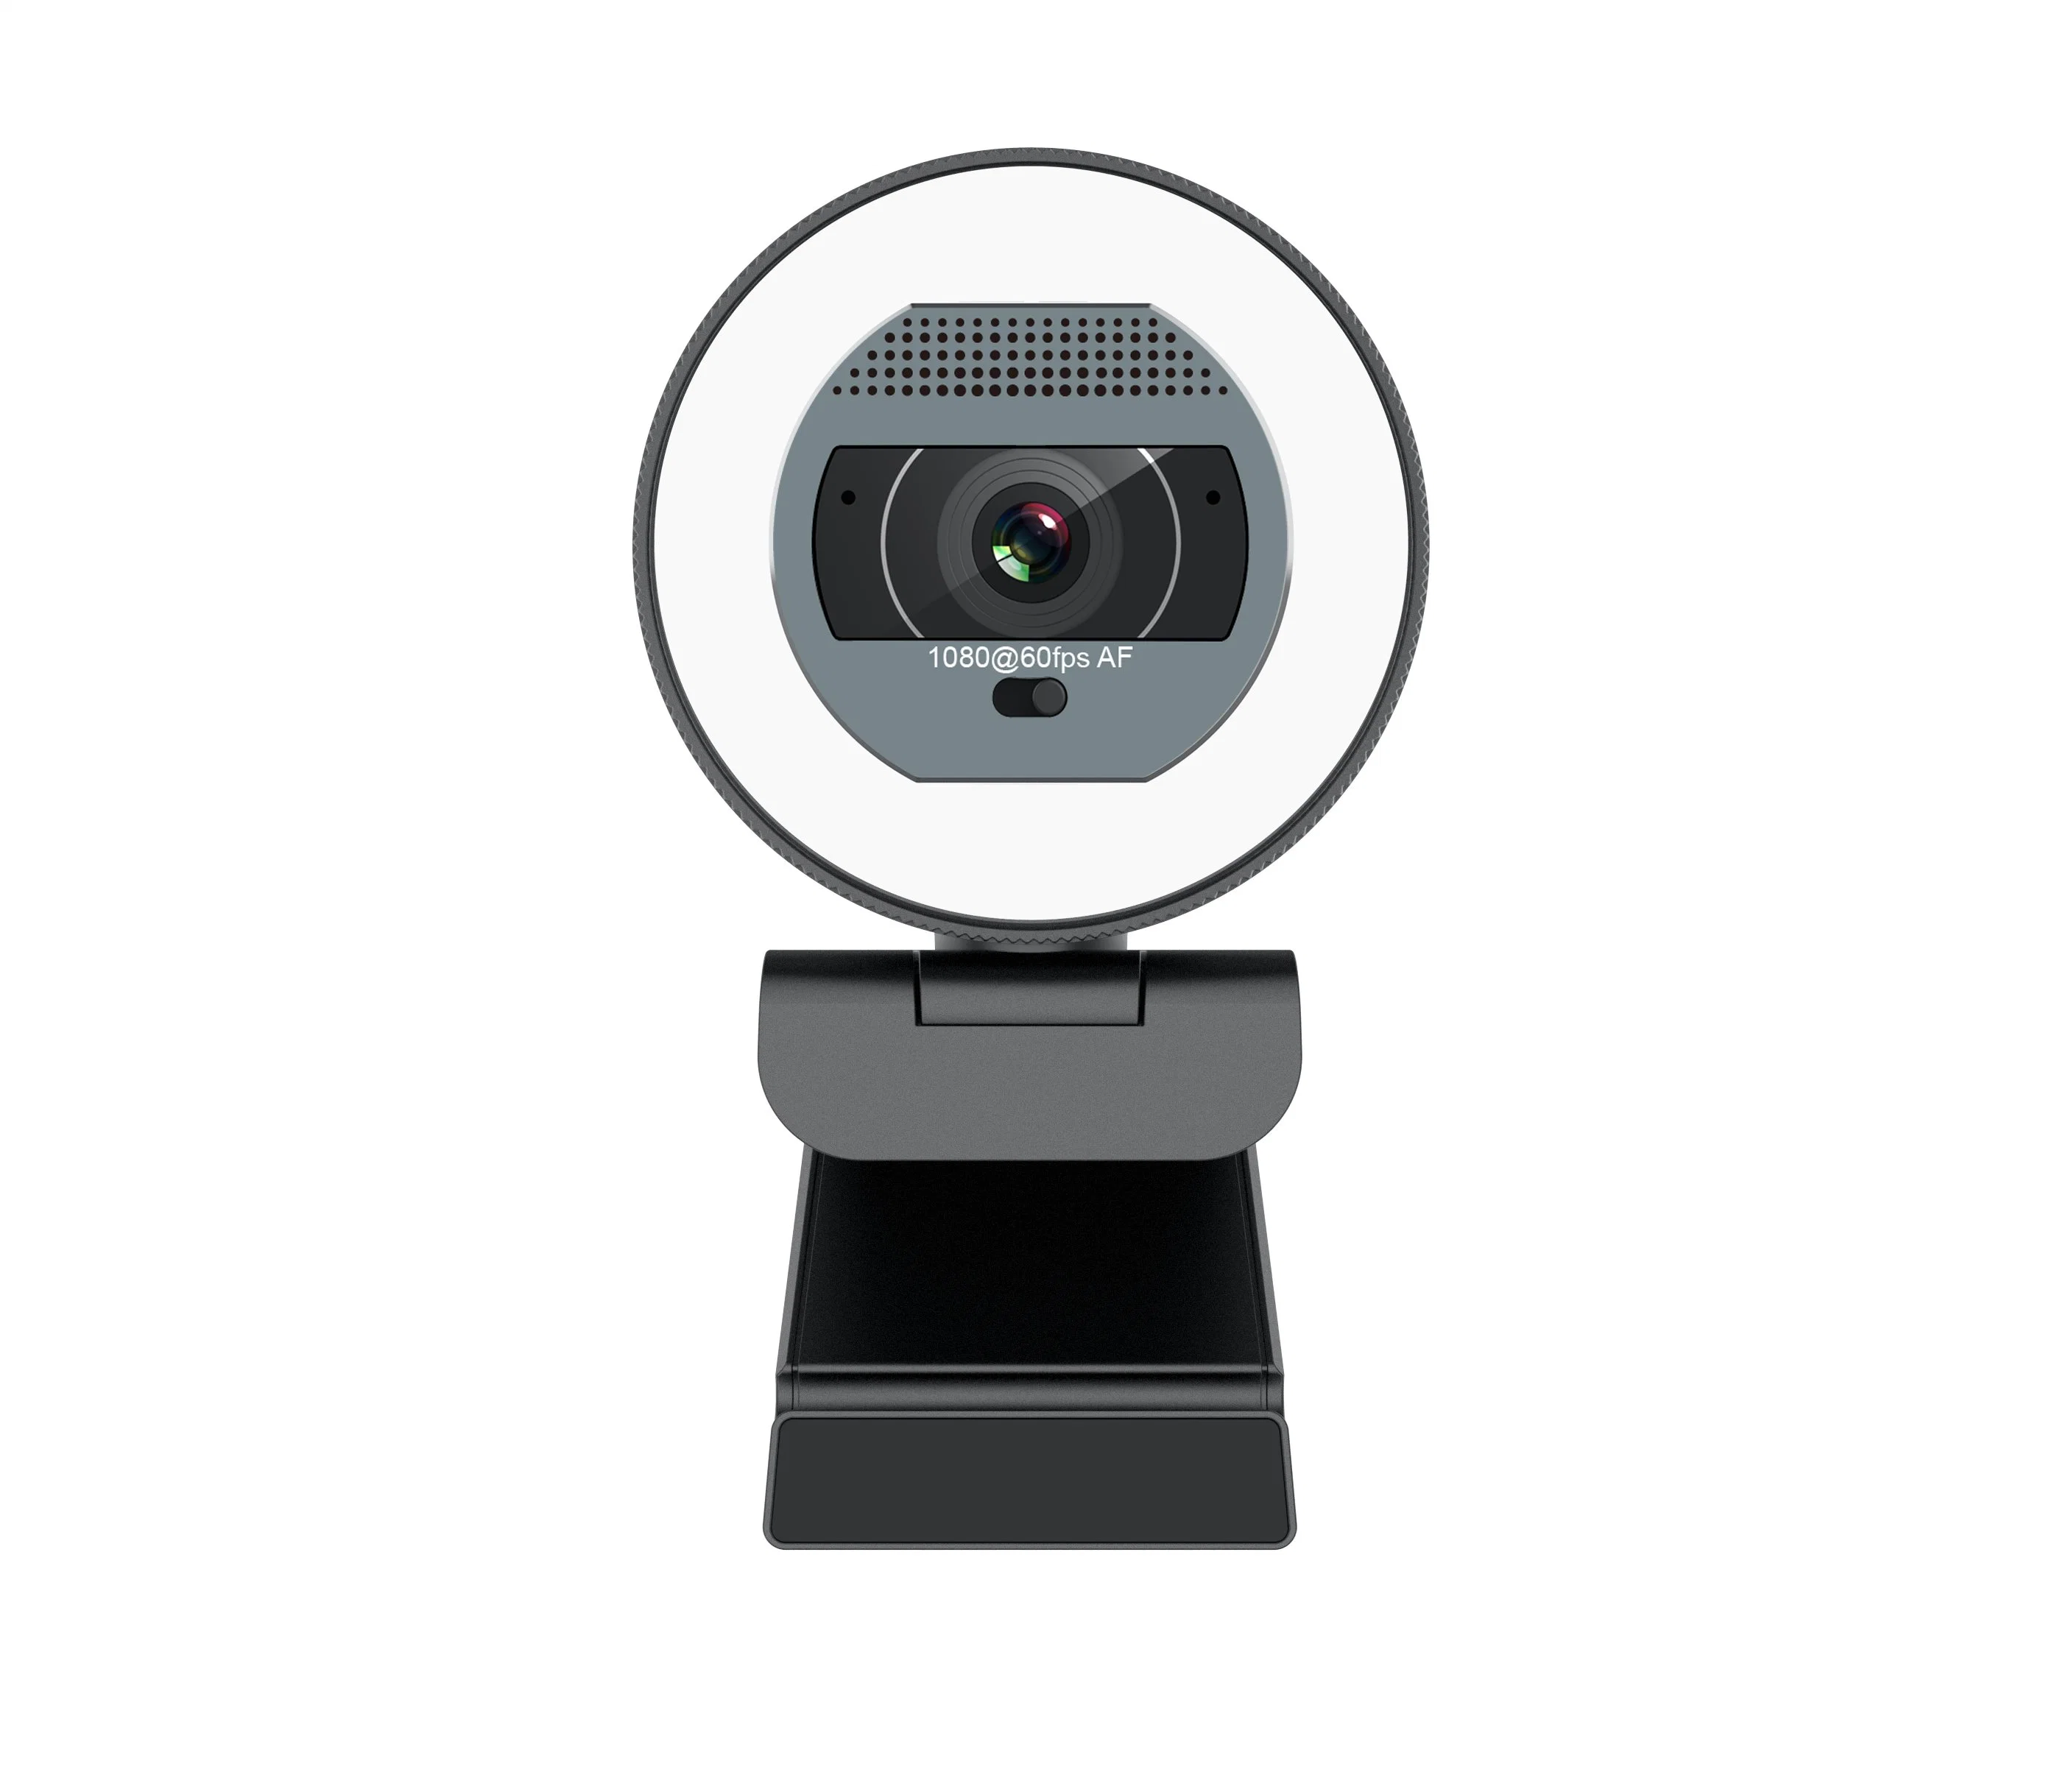 تصميم جديد 1080p كاميرا ويب كاميرا ويب كاميرا ويب بعيدة بدقة 60 إطارًا في الثانية USB تحكم بكاميرا ويب صغيرة مزودة بمصباح رنين لدردشة Livestream عبر الإنترنت